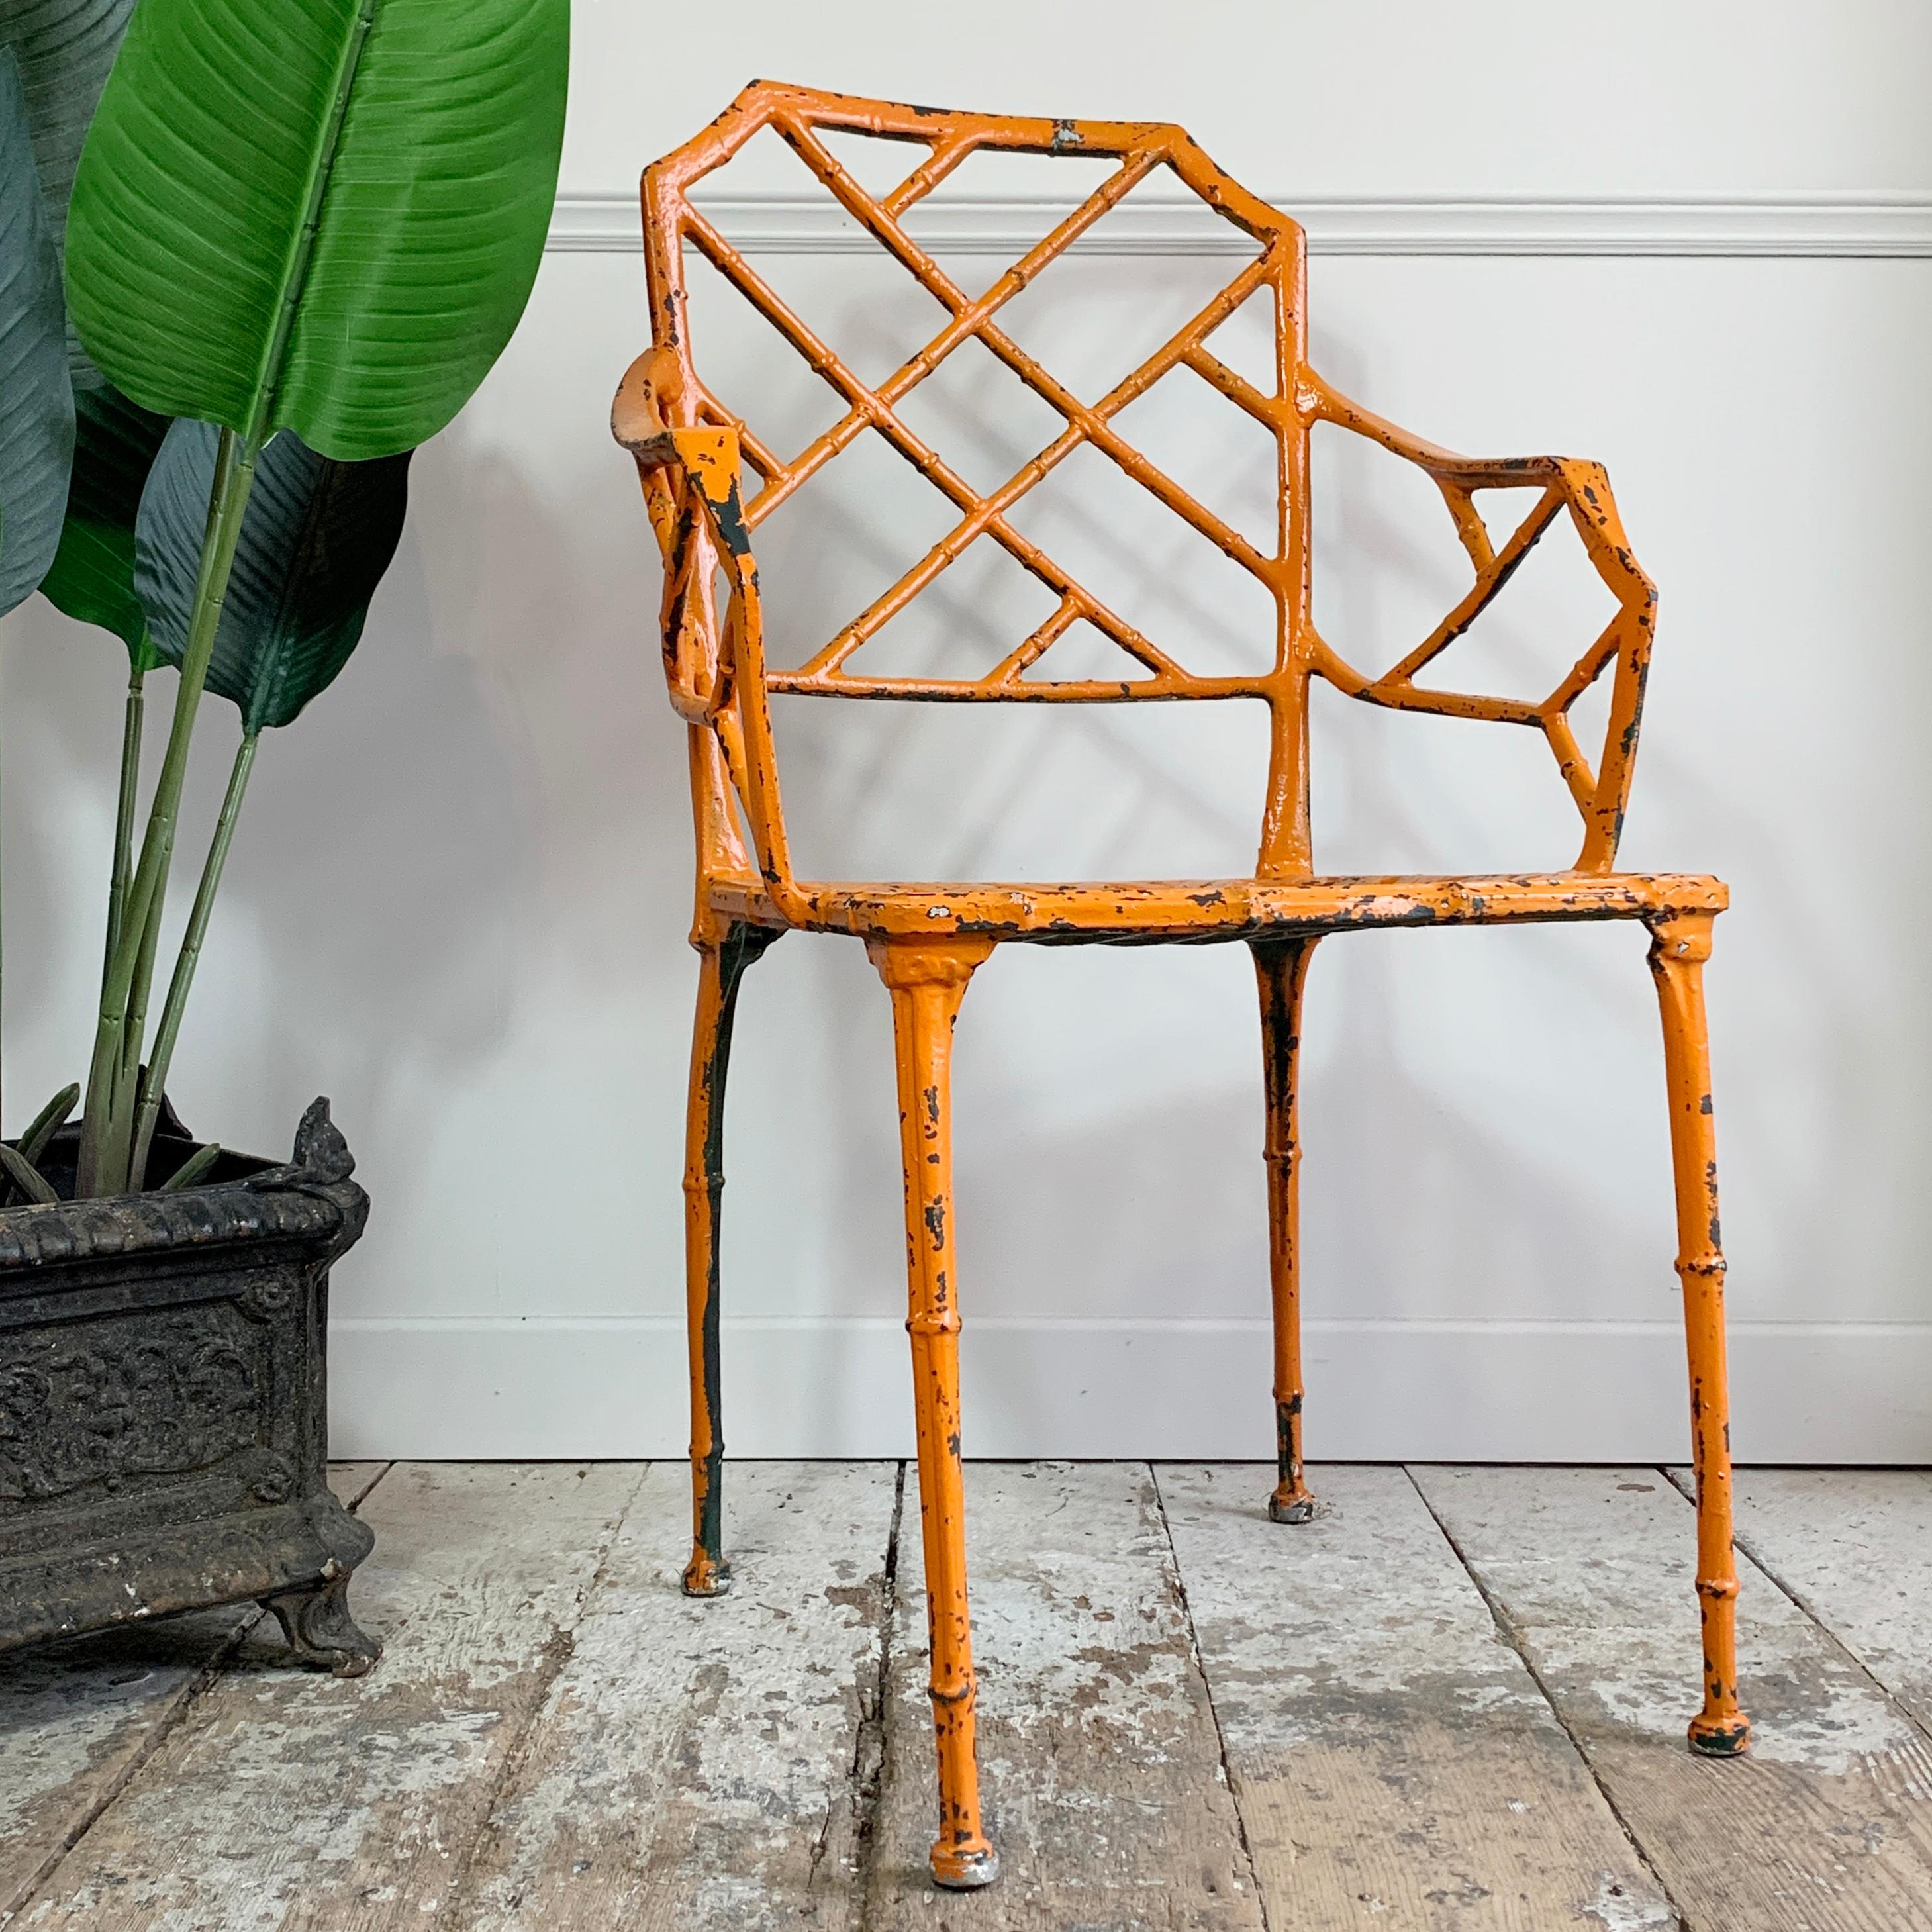 Superbe chaise en faux bambou Brown Jordan Calcutta, inspirée par Chippendale. Cette chaise date des années 1960, elle a été repeinte au cours de sa vie et la couleur supérieure est maintenant un orange vibrant et frappant, ce qui, à notre avis, est